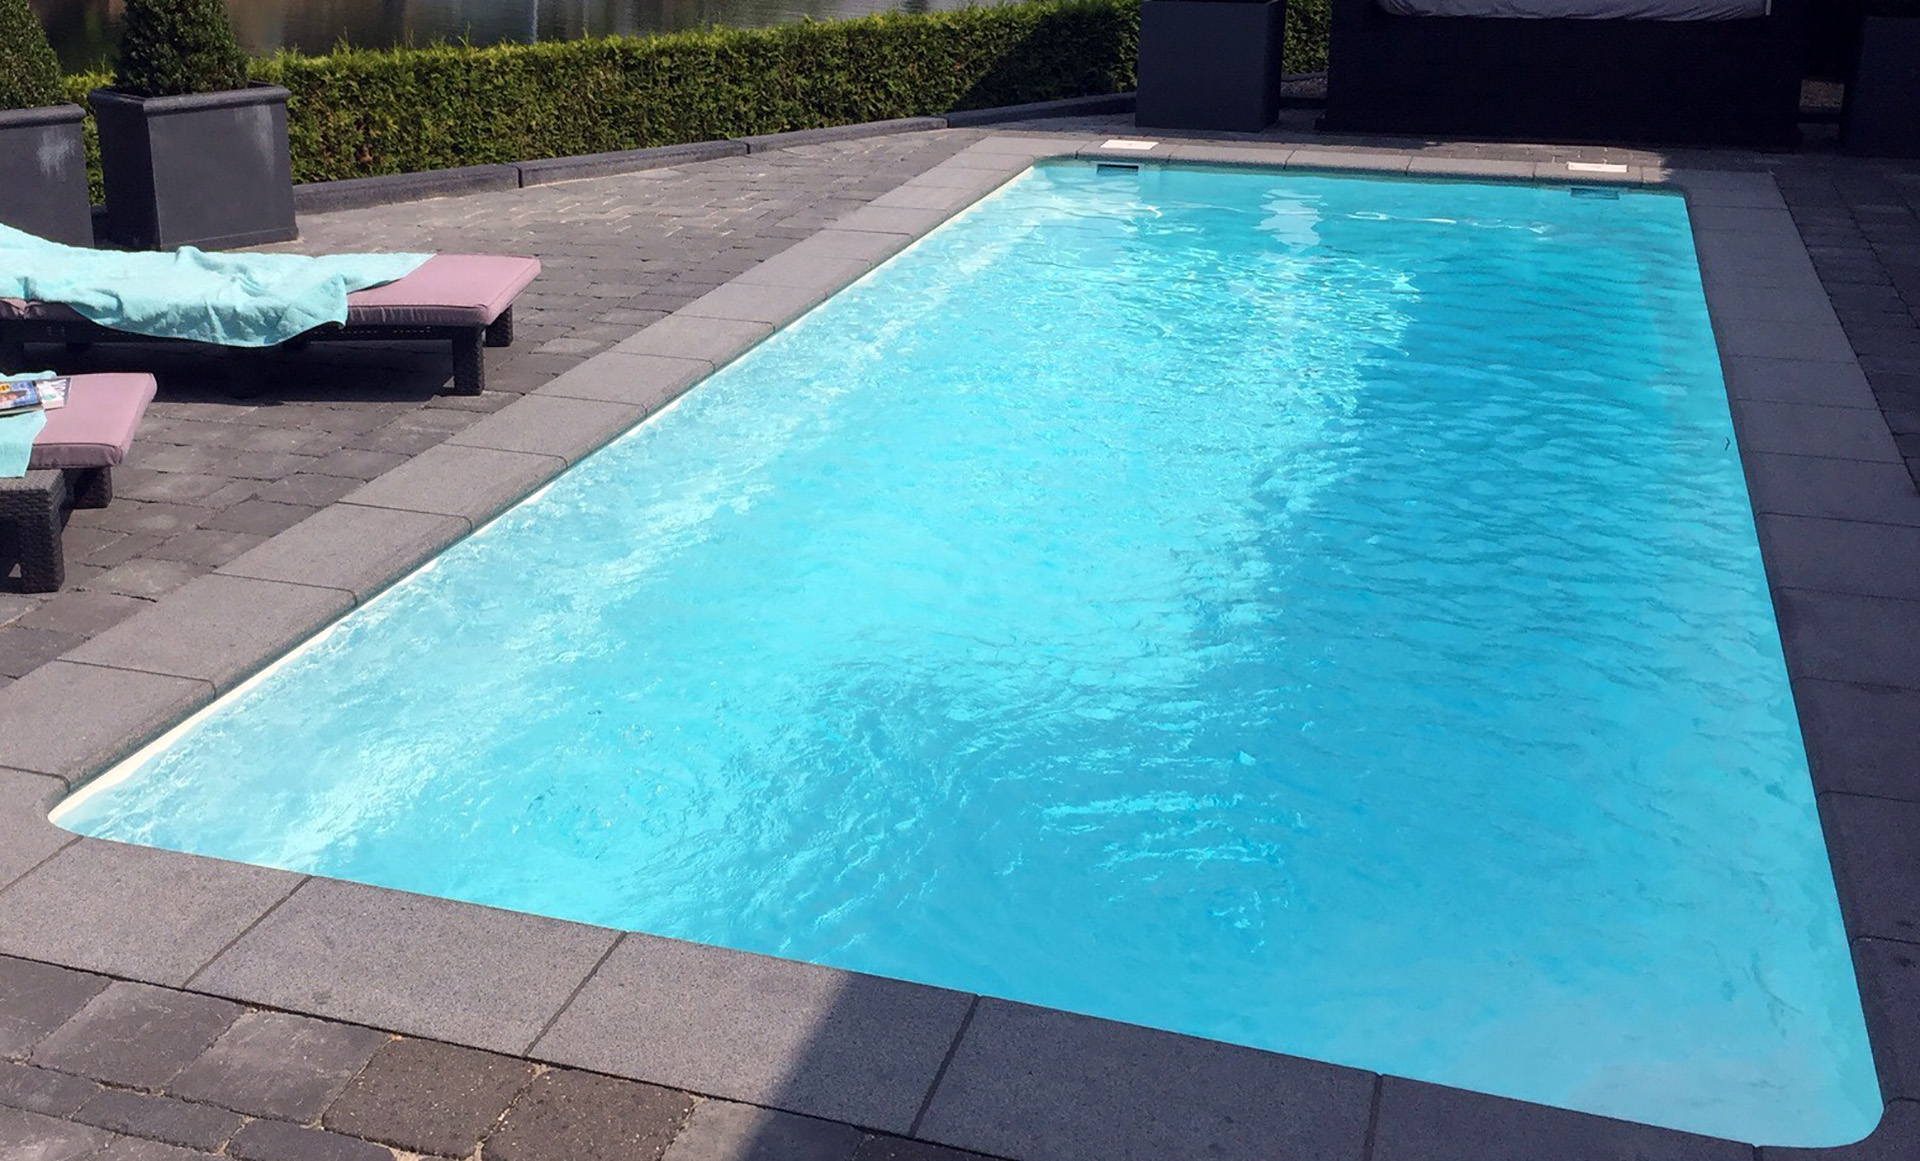 king rectangle swimming pool 9 x 3.75 x 1.5m in metallic finish